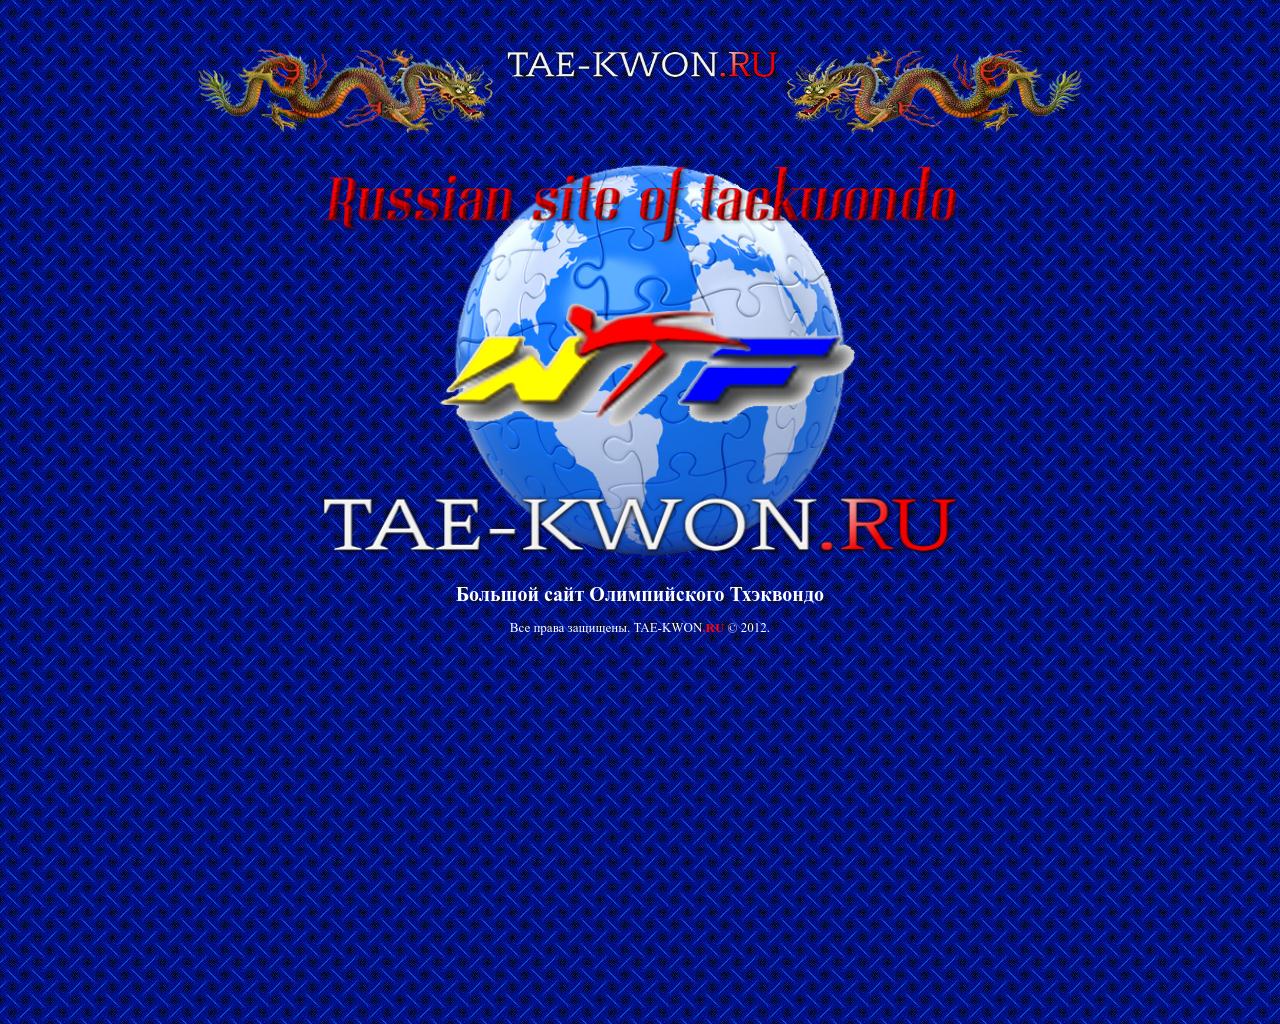 Изображение сайта tae-kwon.ru в разрешении 1280x1024